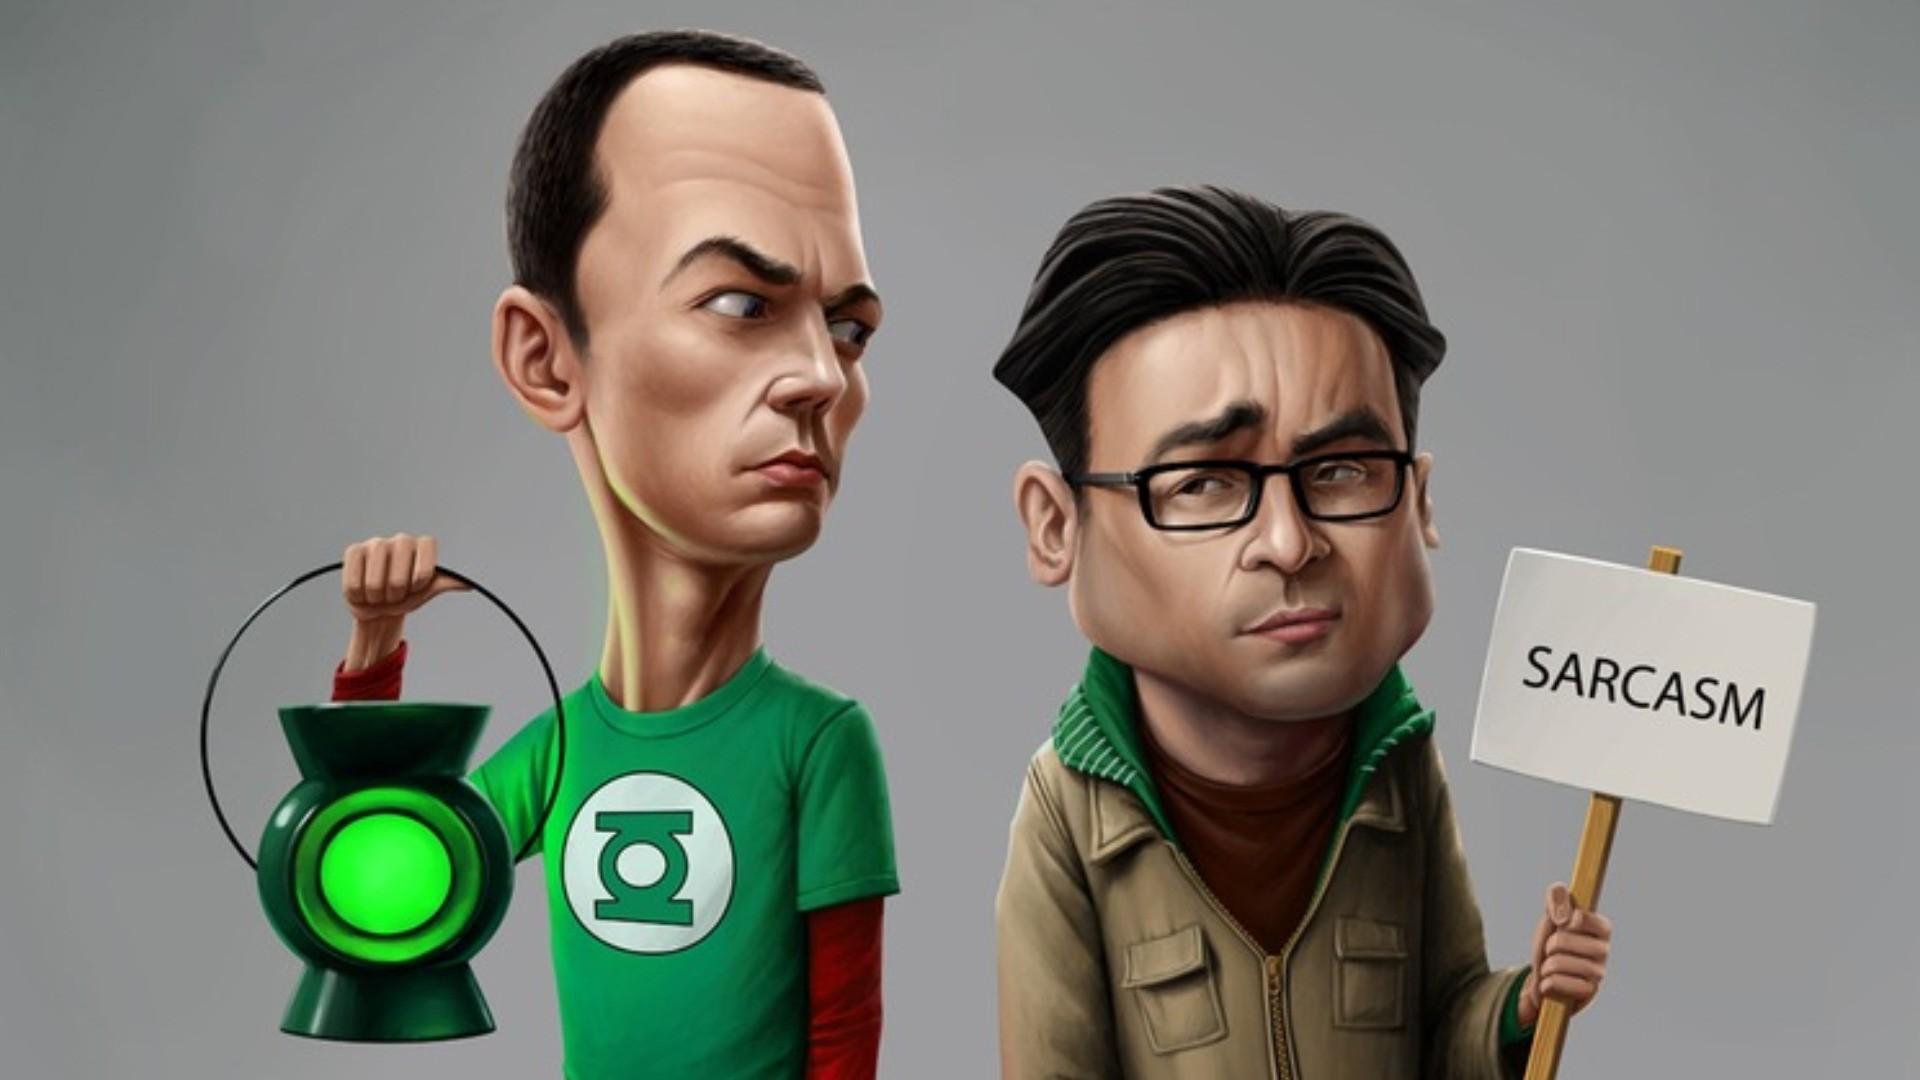 The big bang theory, Sheldon, Leonard, Lamp, Sarcasm wallpaper. HD